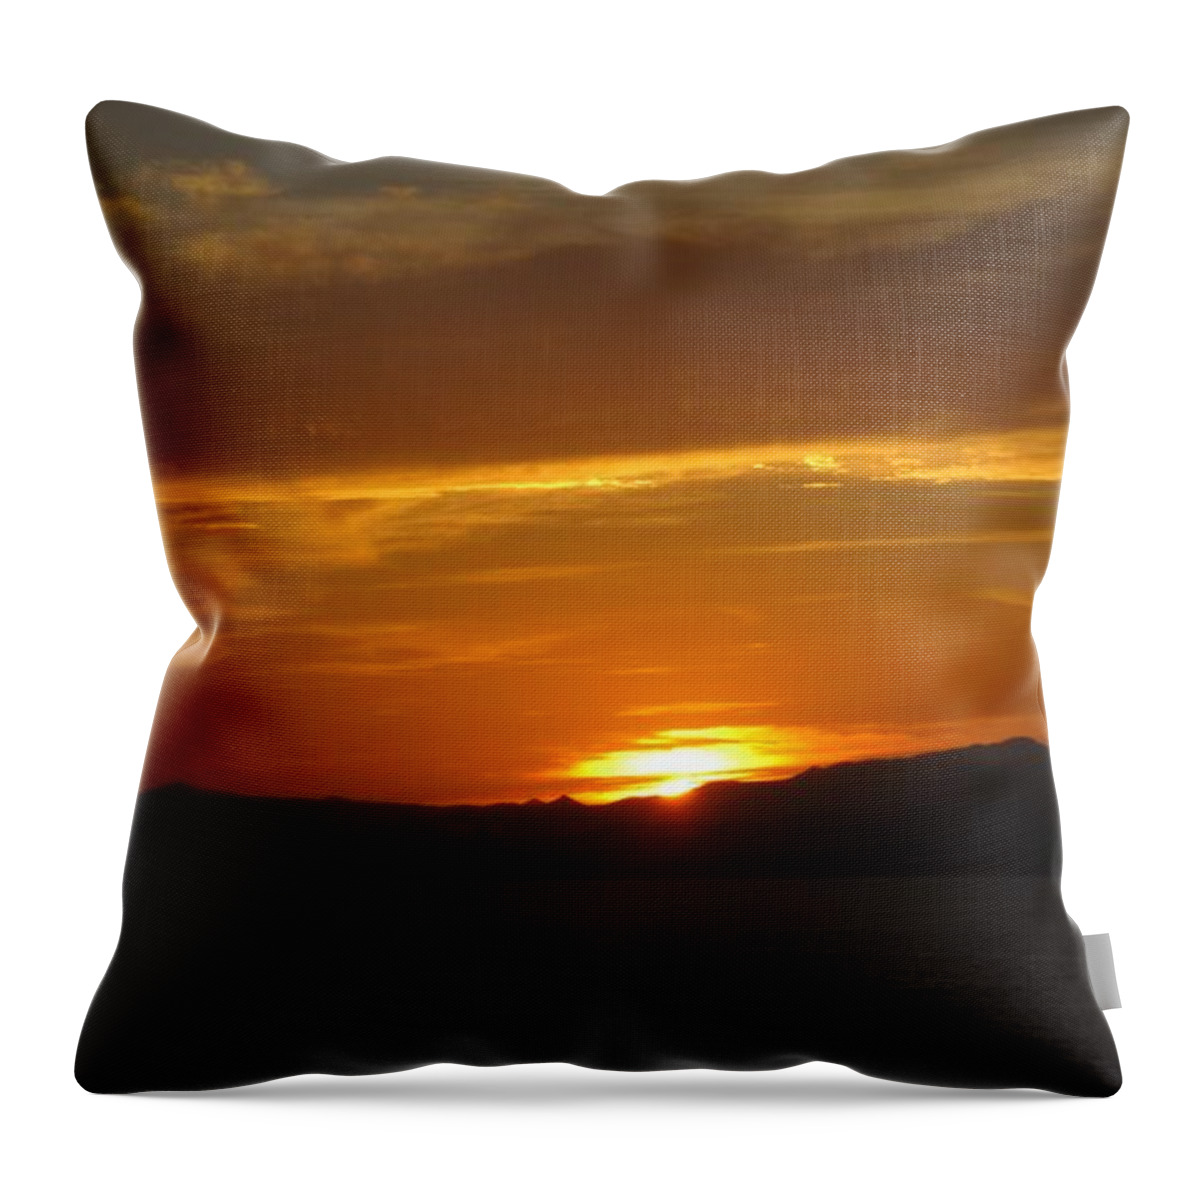 Puerto Vallarta Throw Pillow featuring the photograph Puerto Vallarta Sunset by Marilyn Wilson